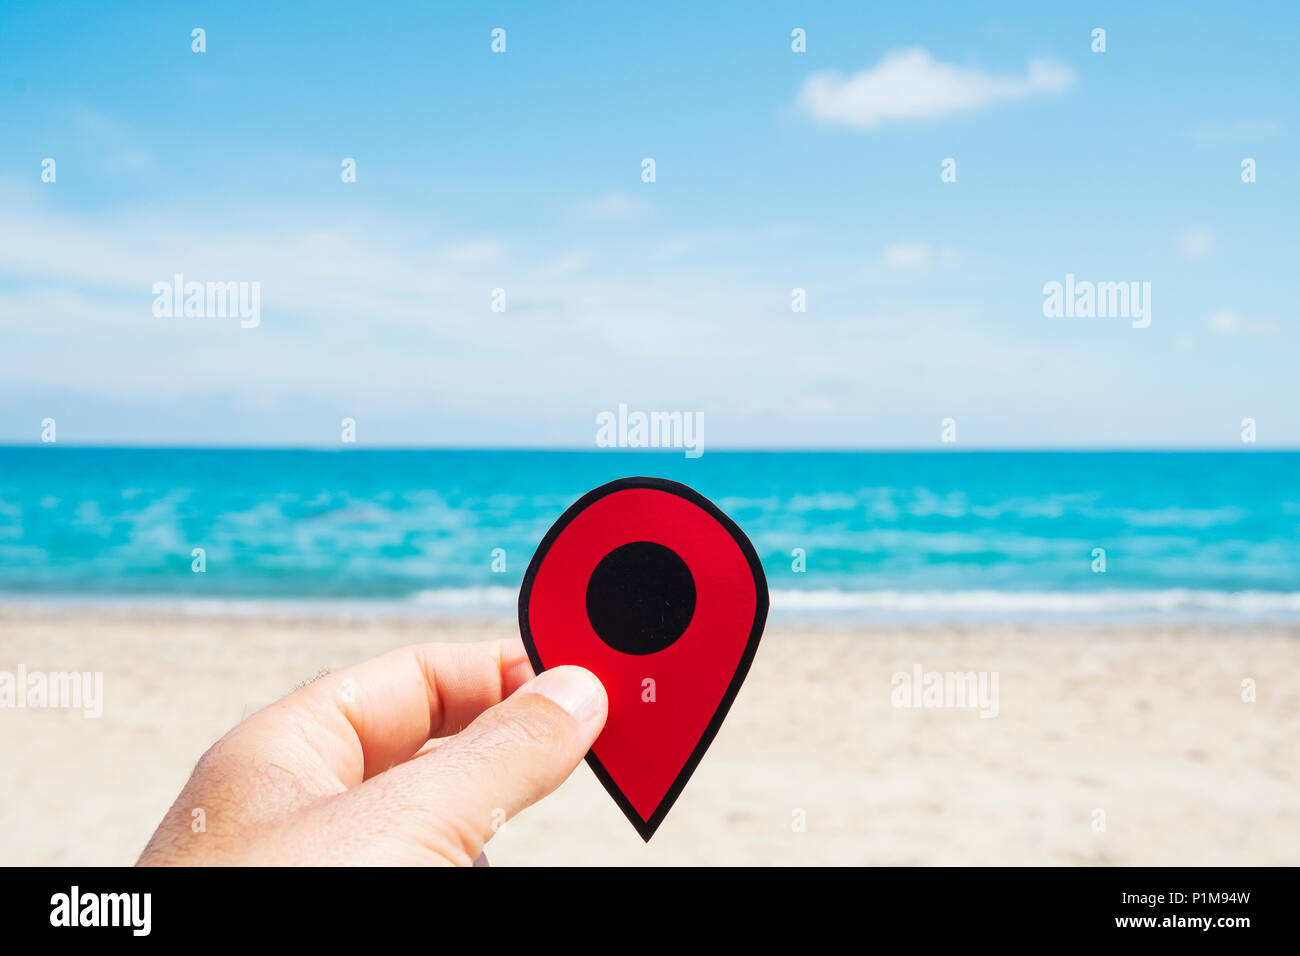 Nahaufnahme eines jungen kaukasischen Mann mit einem roten Marker in der Hand, entspannt am Strand, mit dem Meer im Hintergrund Stockfoto